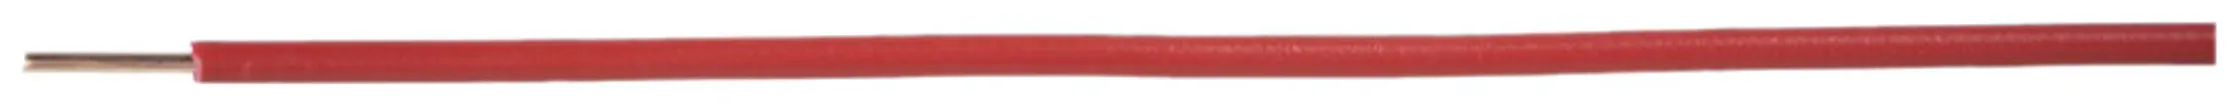 Fil N H07Z1-U sans halogène 1.5mm² 450/750V rouge Cca 